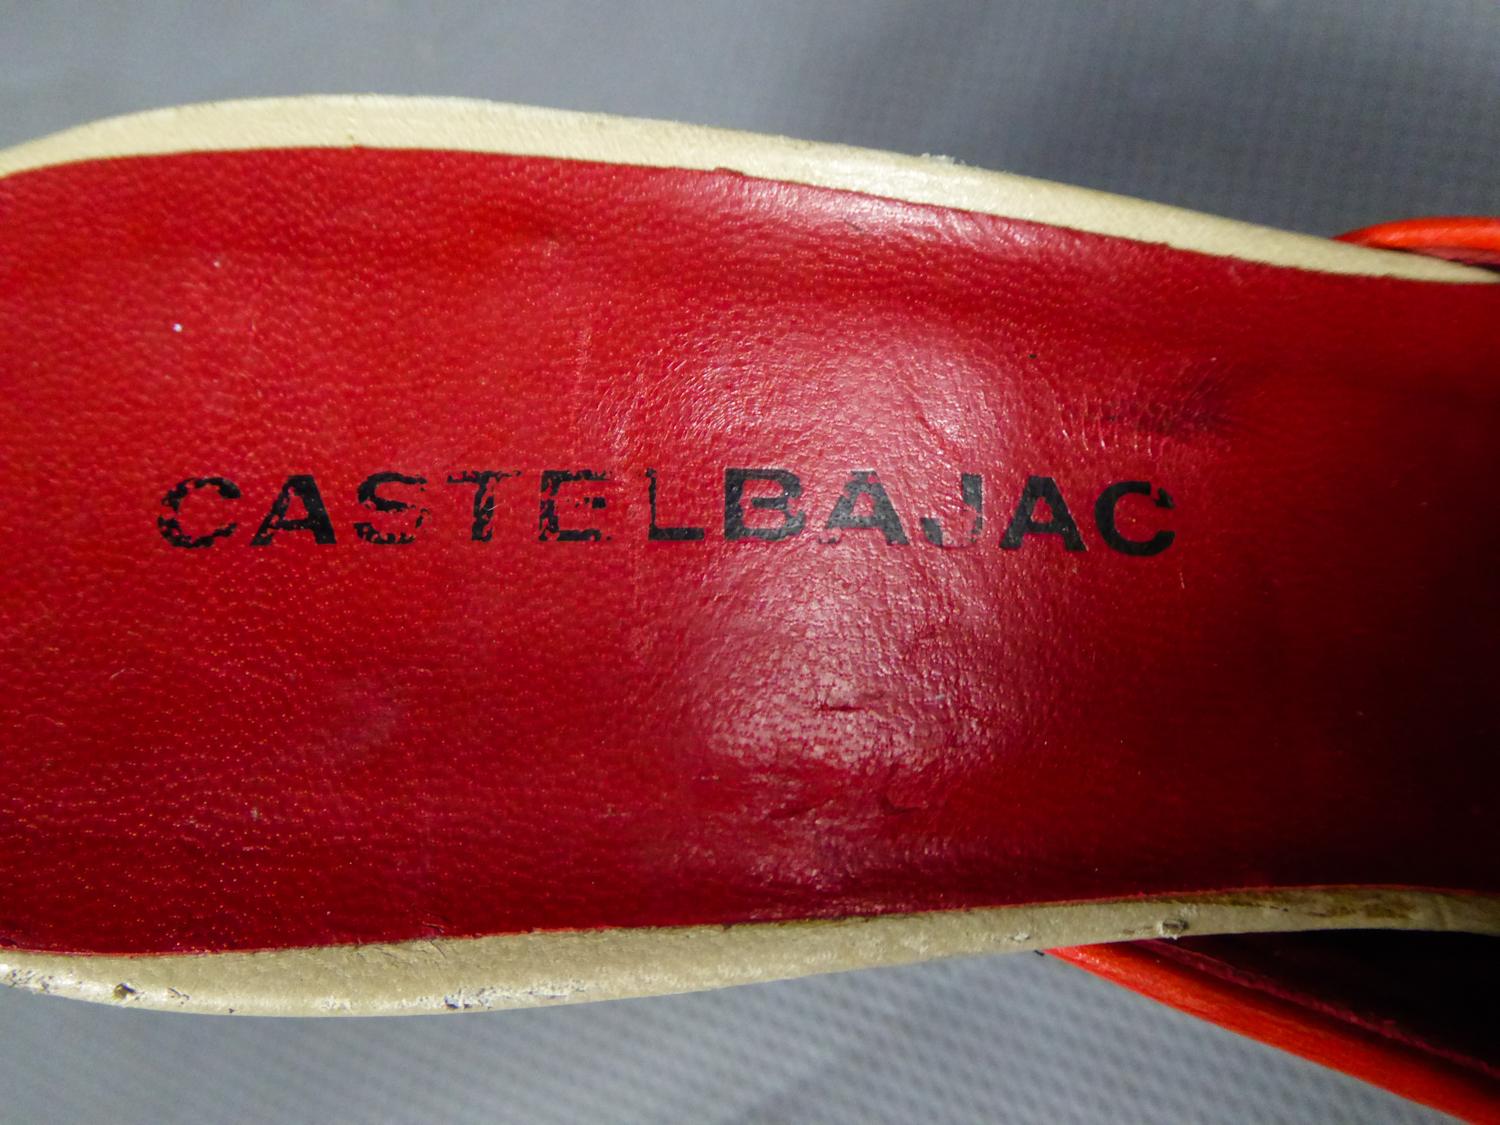 castelbajac shoes